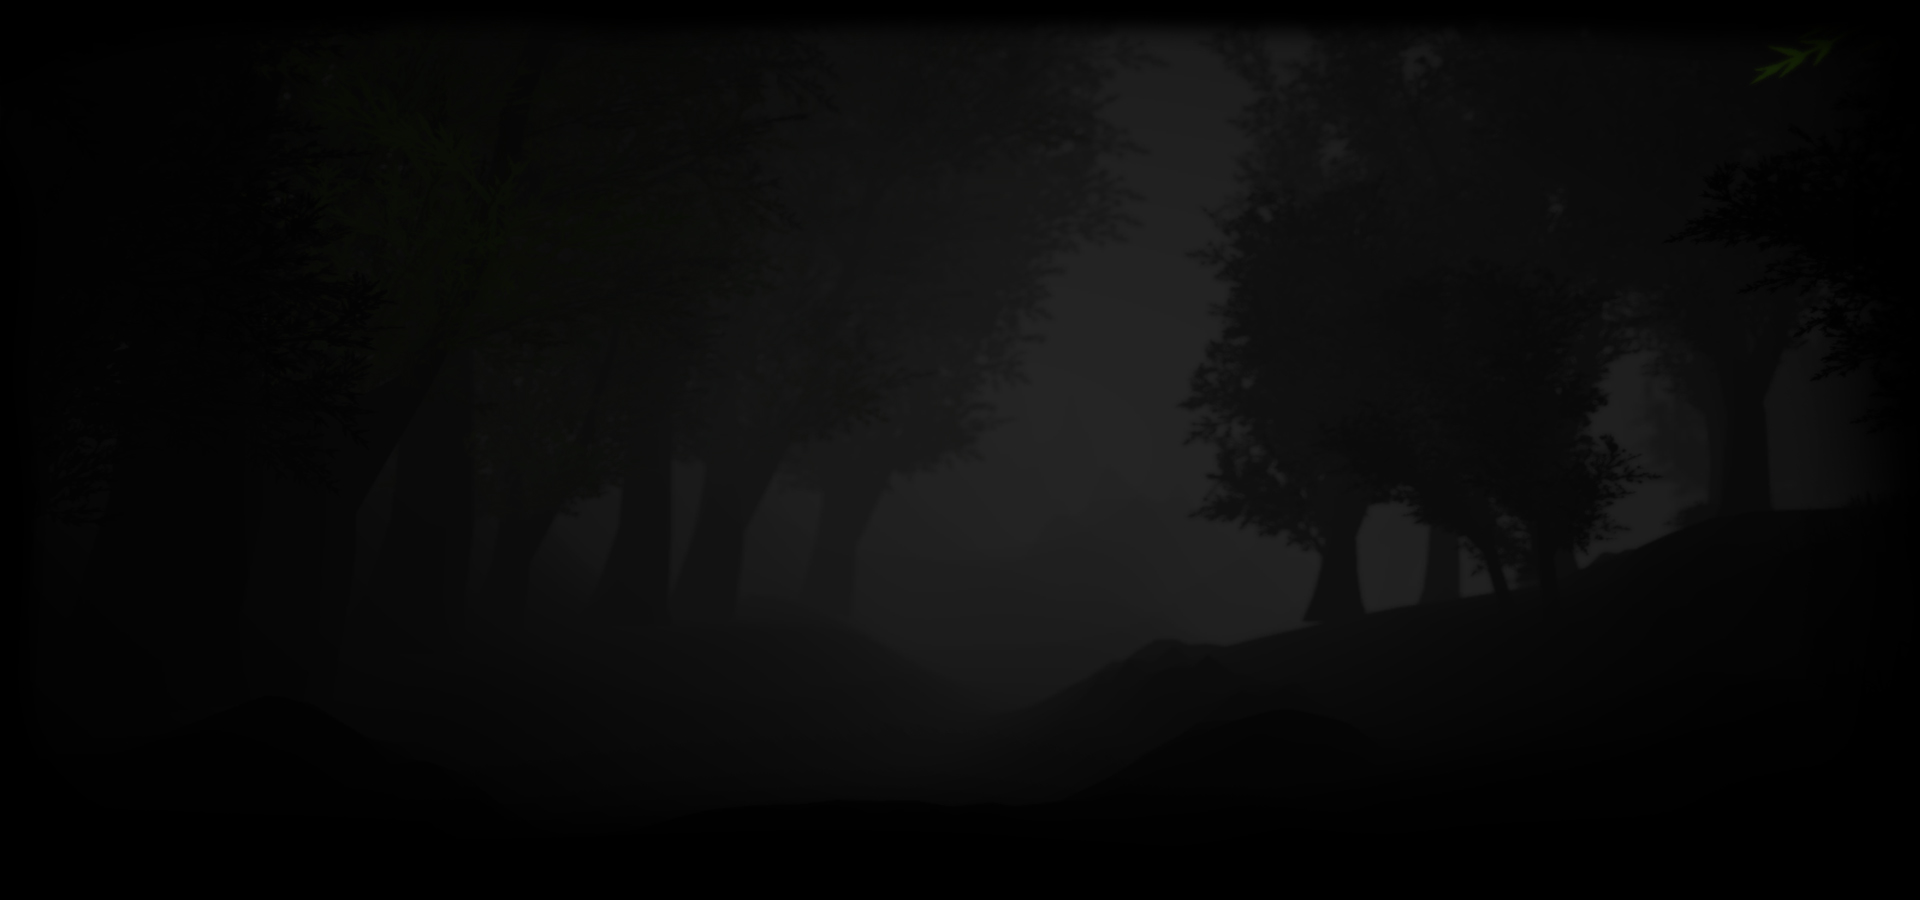 Dark Forest #2